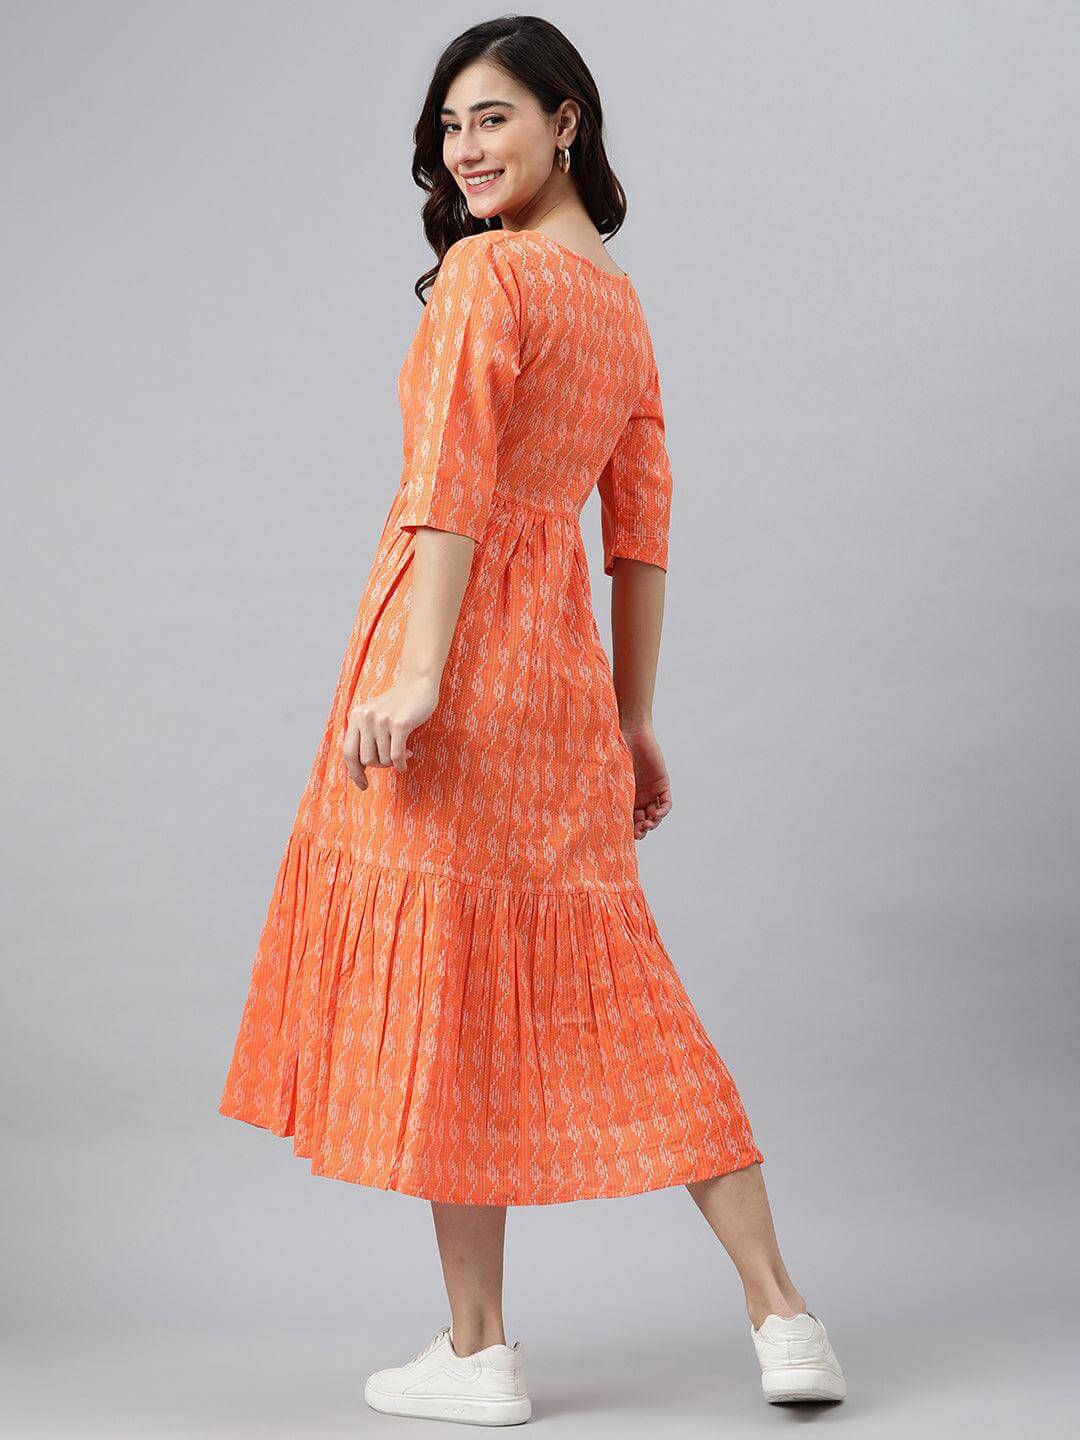 Orange Cotton Woven Design Tiered Western Dress Janasya